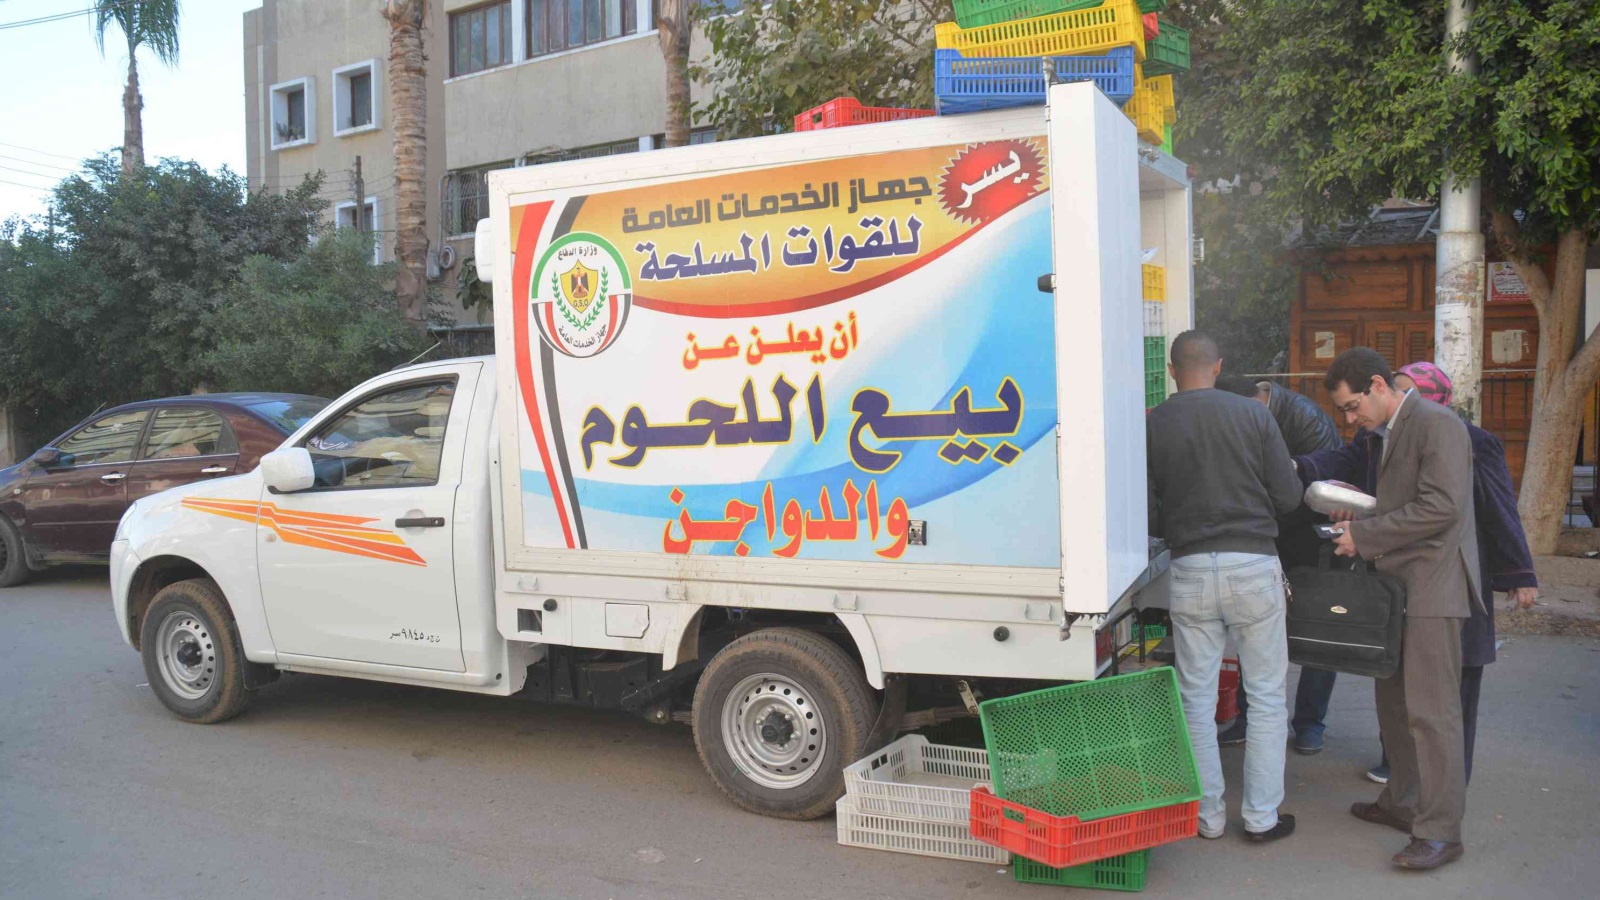 سيارة لبيع منتجات الجيش المصري (مواقع التواصل الاجتماعي)